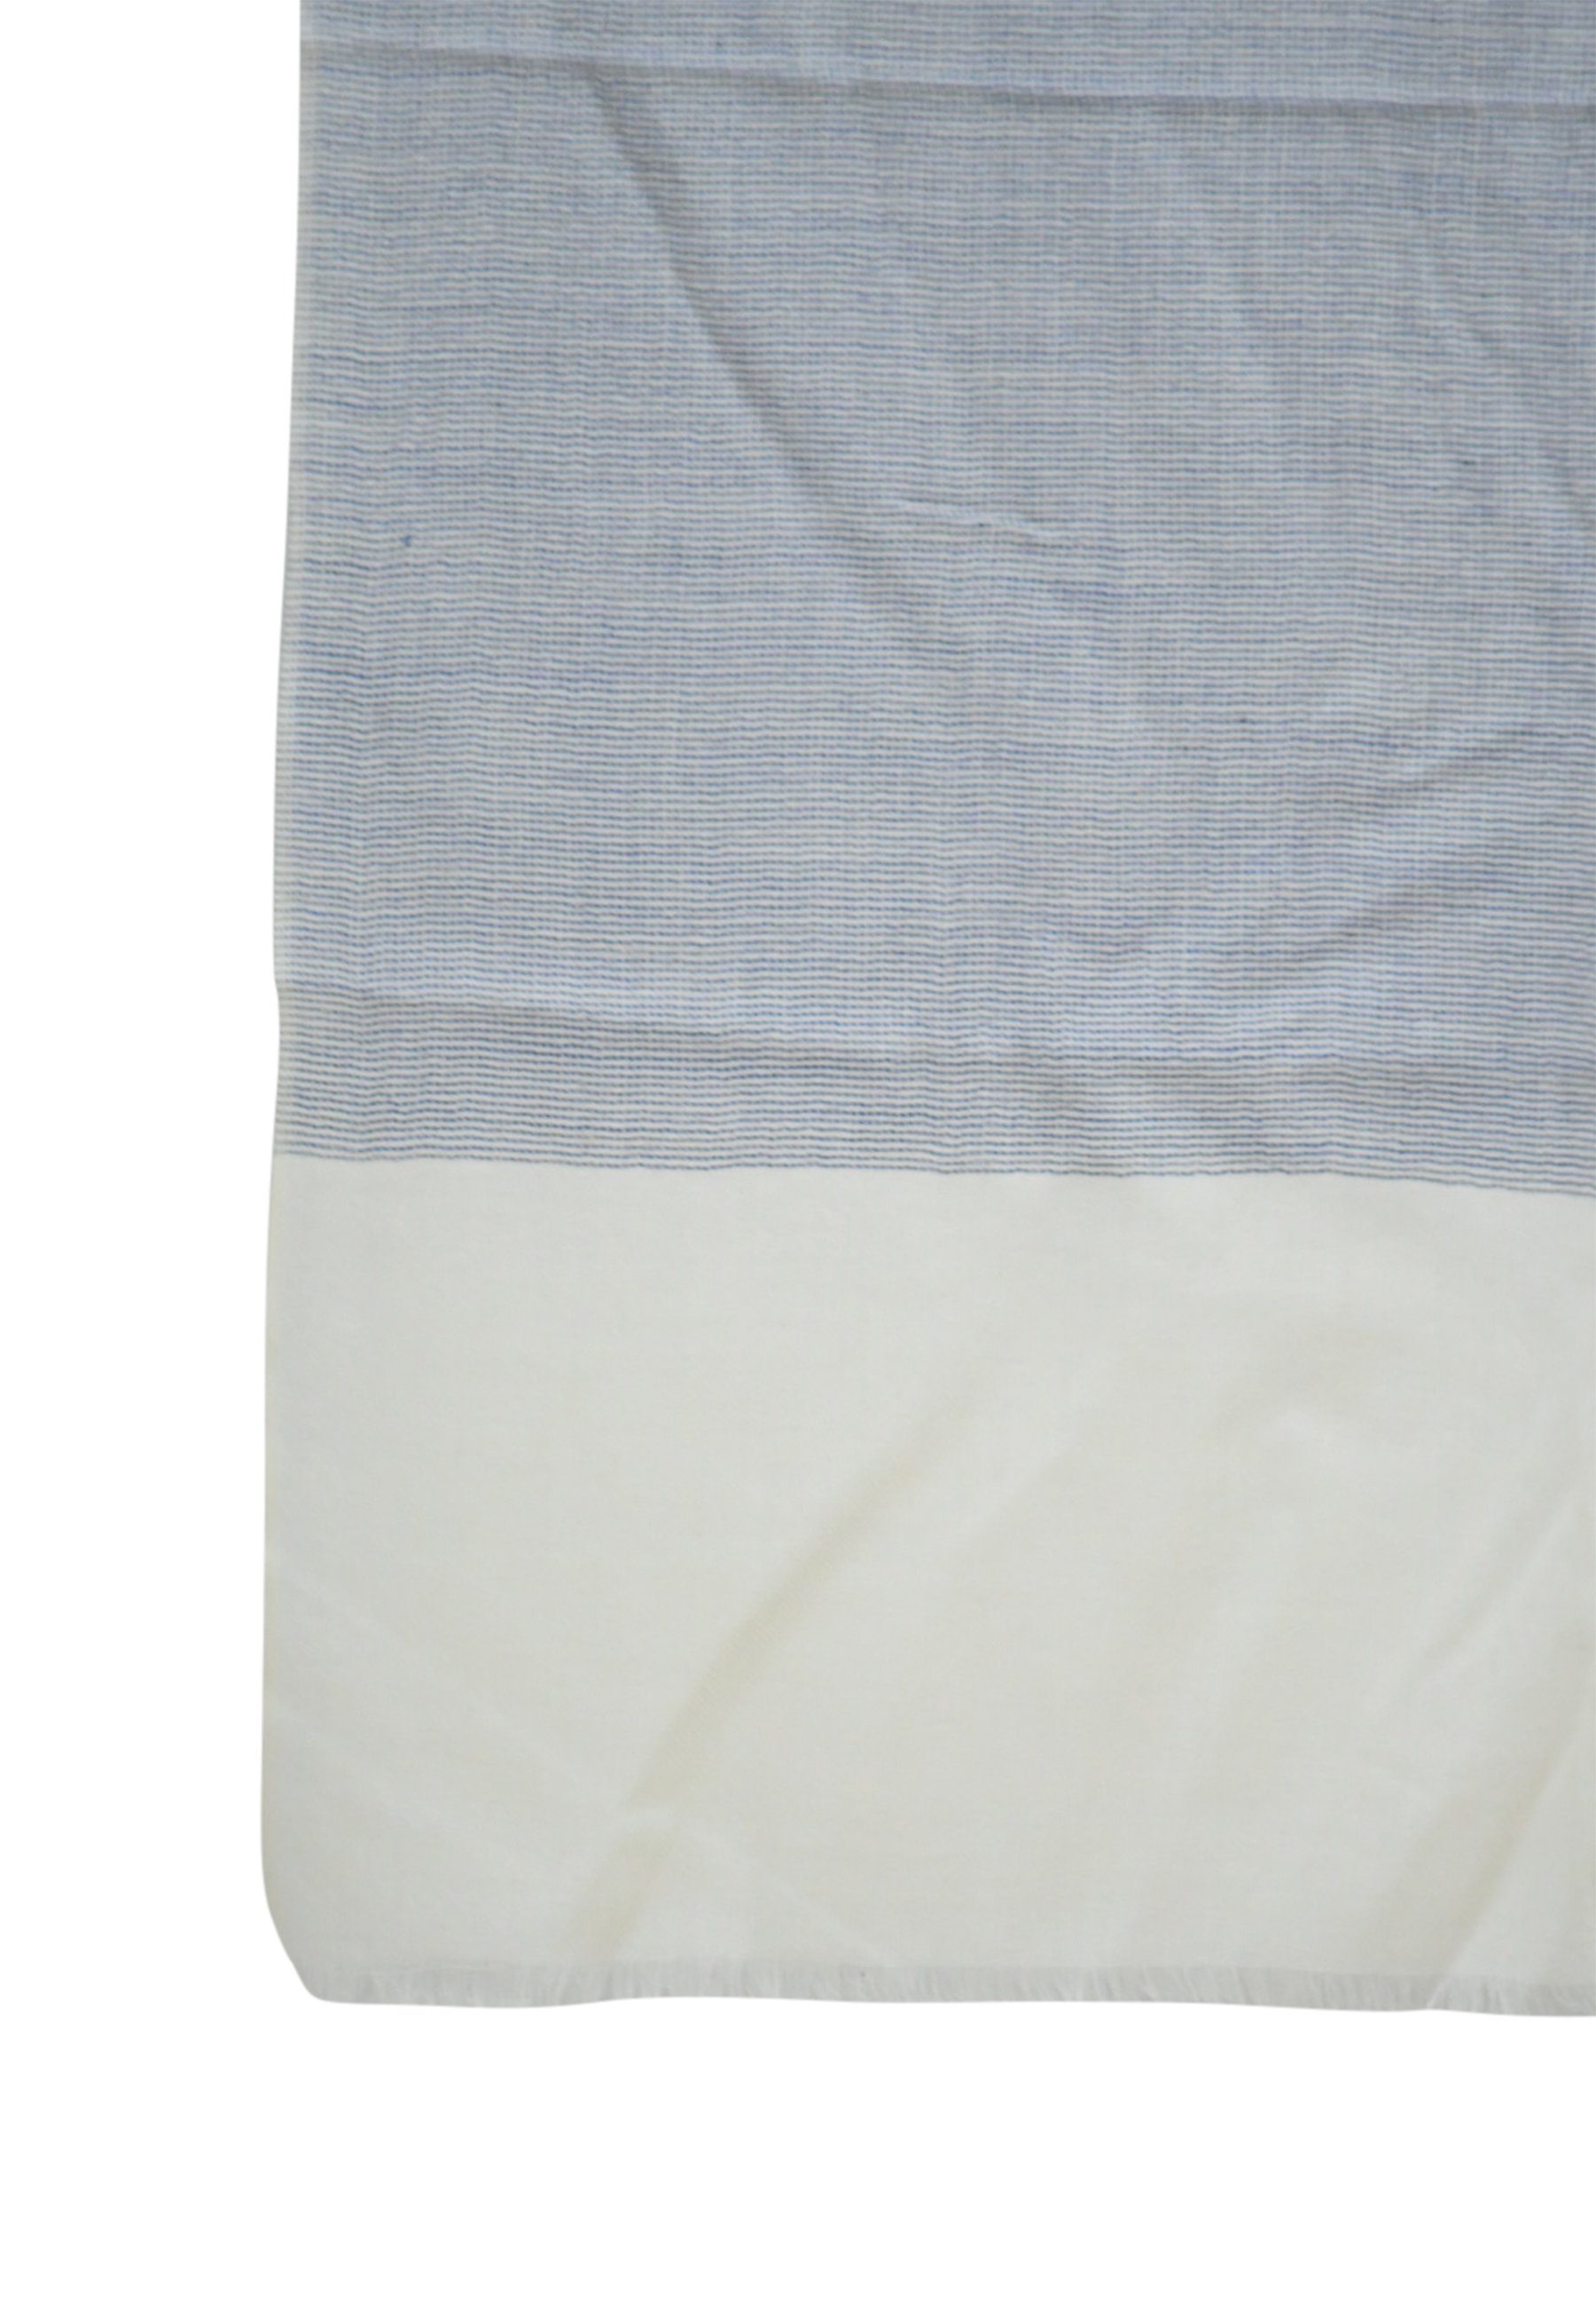 Blue Chilli Schal Erhöhen aus blau eleganter Kaschmir-Wollschal Sie mit Stil: zweifarbiger Wolle Schal mit Ihren Aussehen Eleganz, einzigartigem Unverkennbar